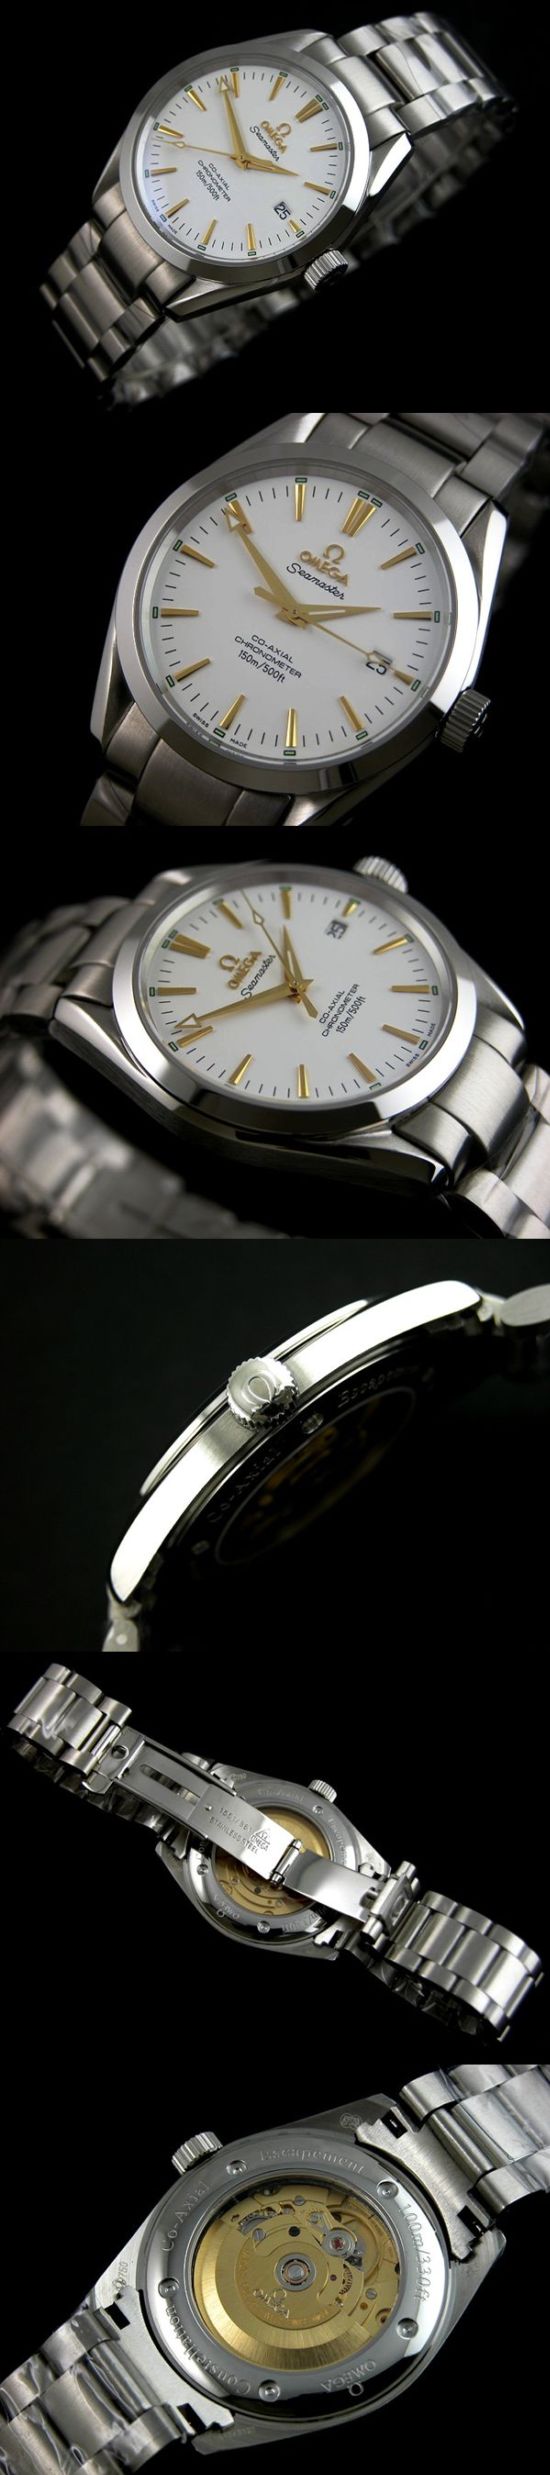 おしゃれなブランド時計がオメガ-シーマスター-OMEGA-2373-70-bt-男性用を提供します.